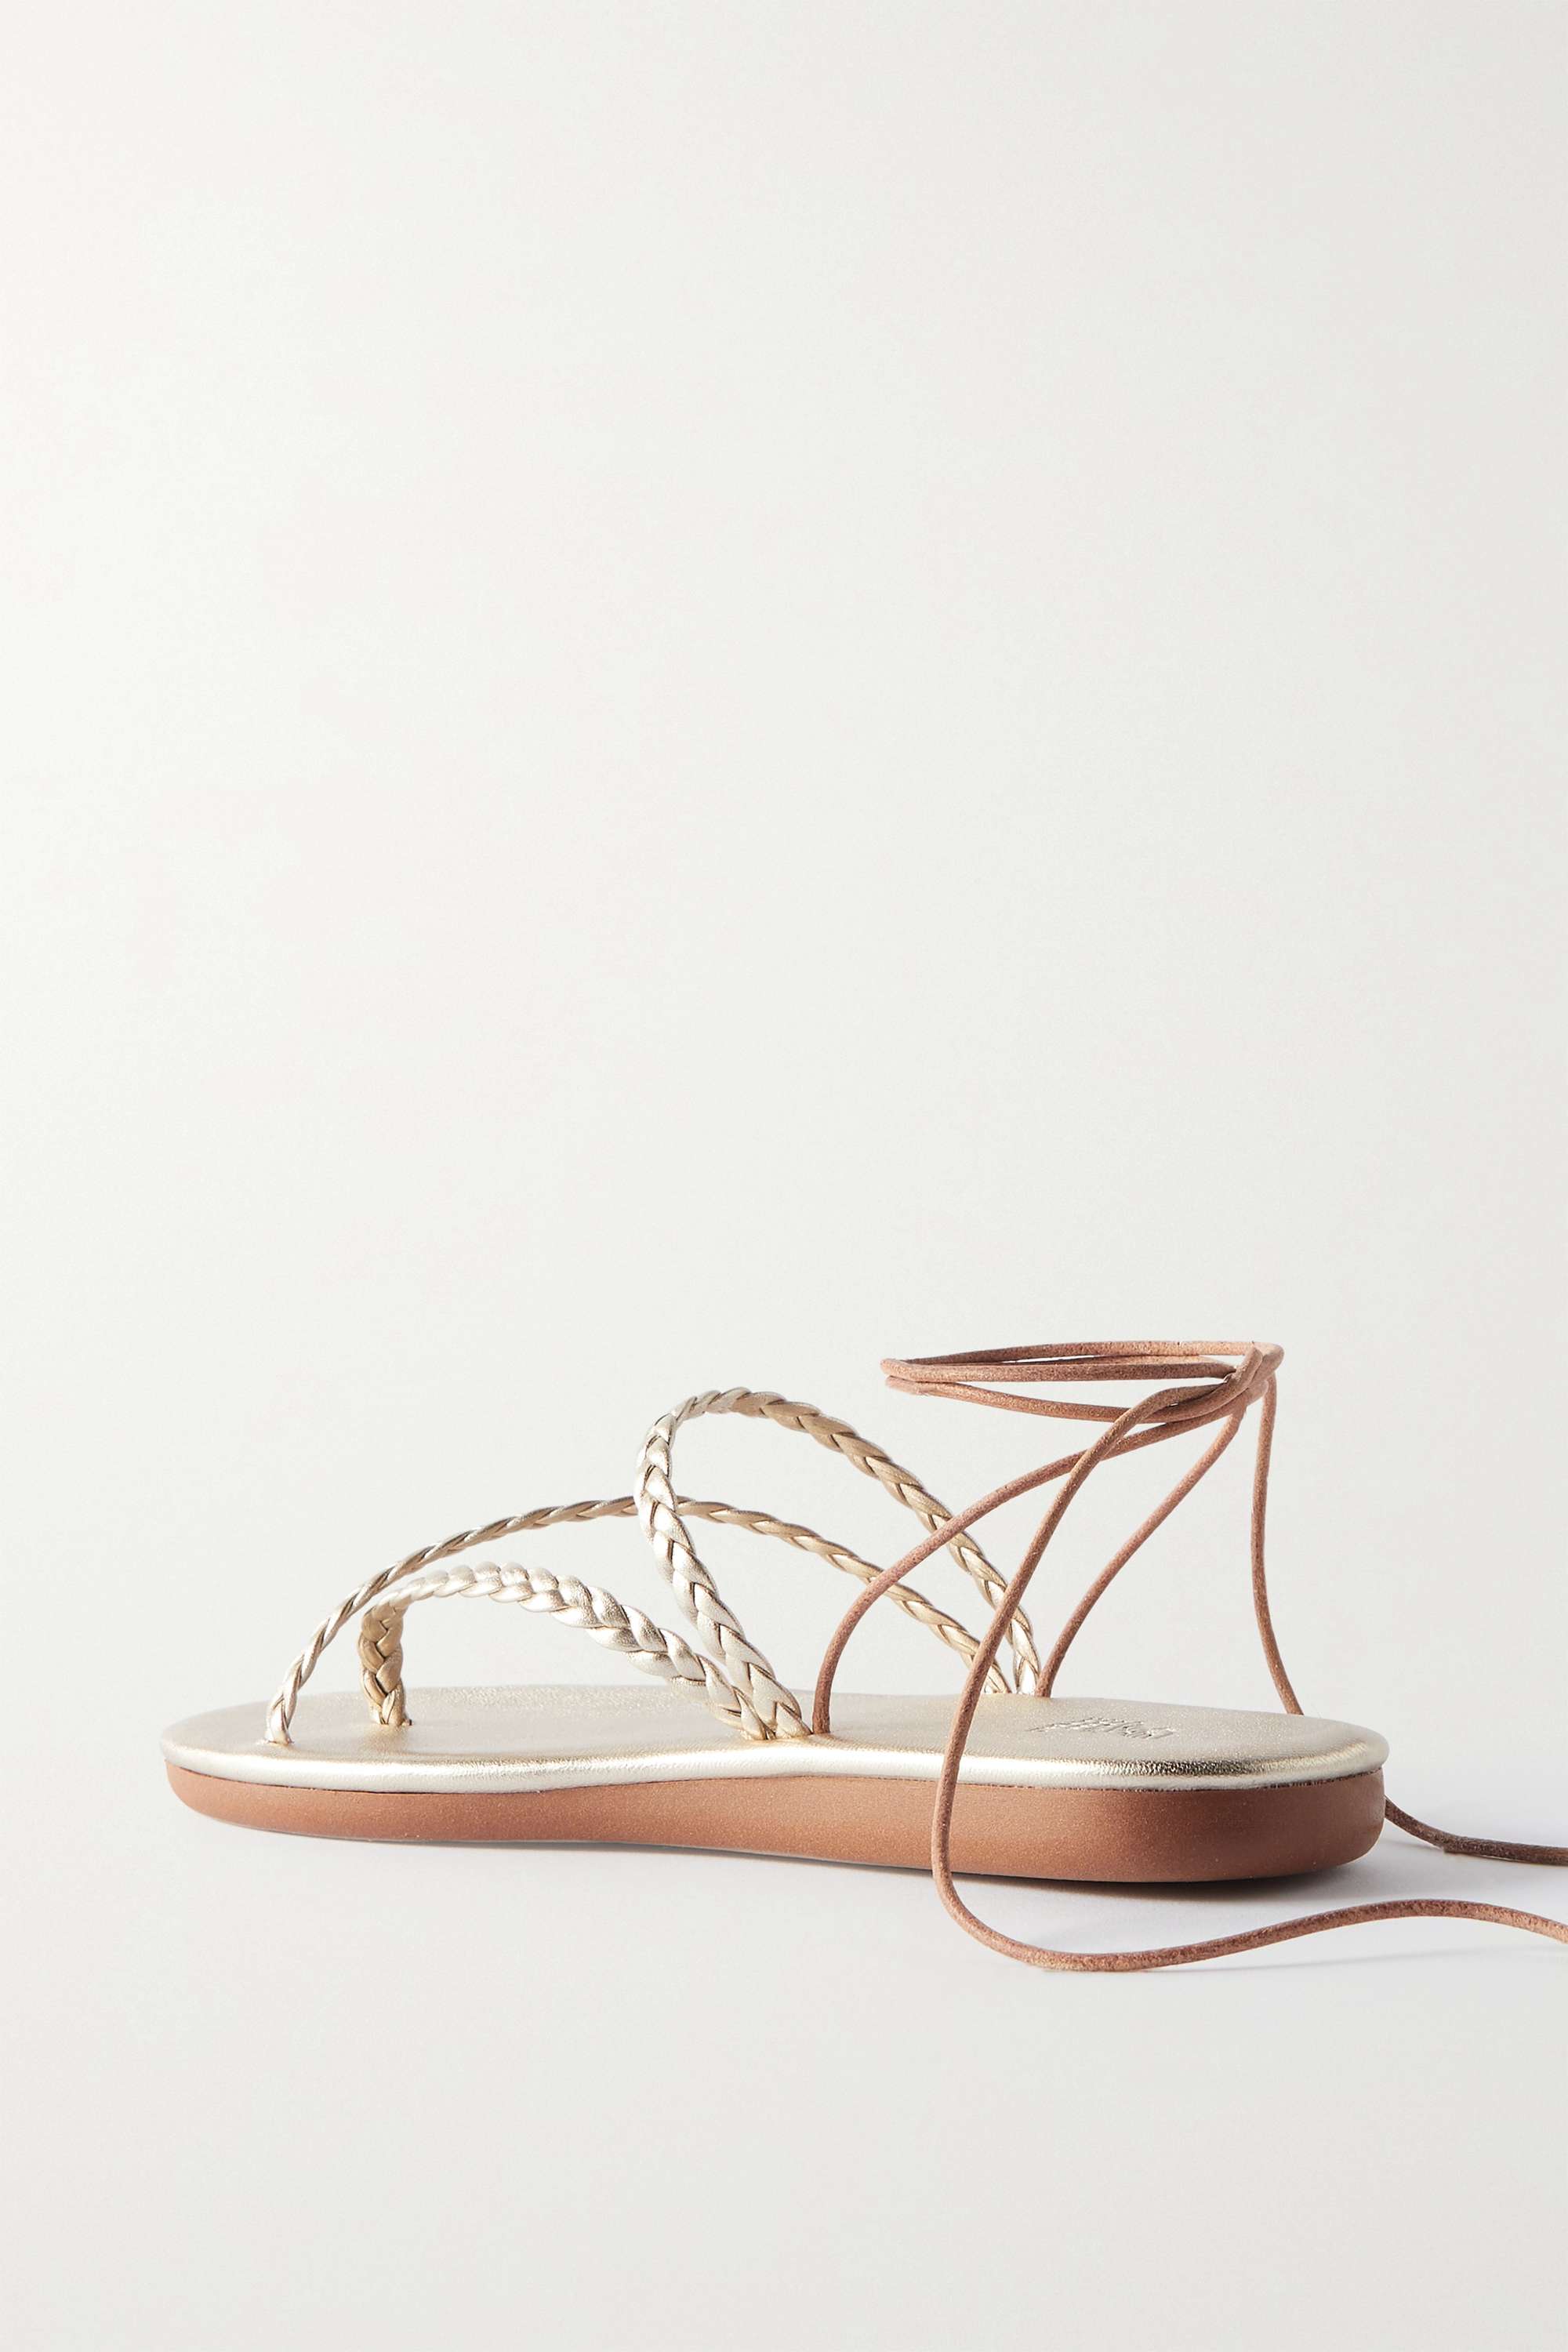 ANCIENT GREEK SANDALS плетеные сандалии Plage из металлизированной кожи, золото кожаные сандалии homeria ancient greek sandals белый